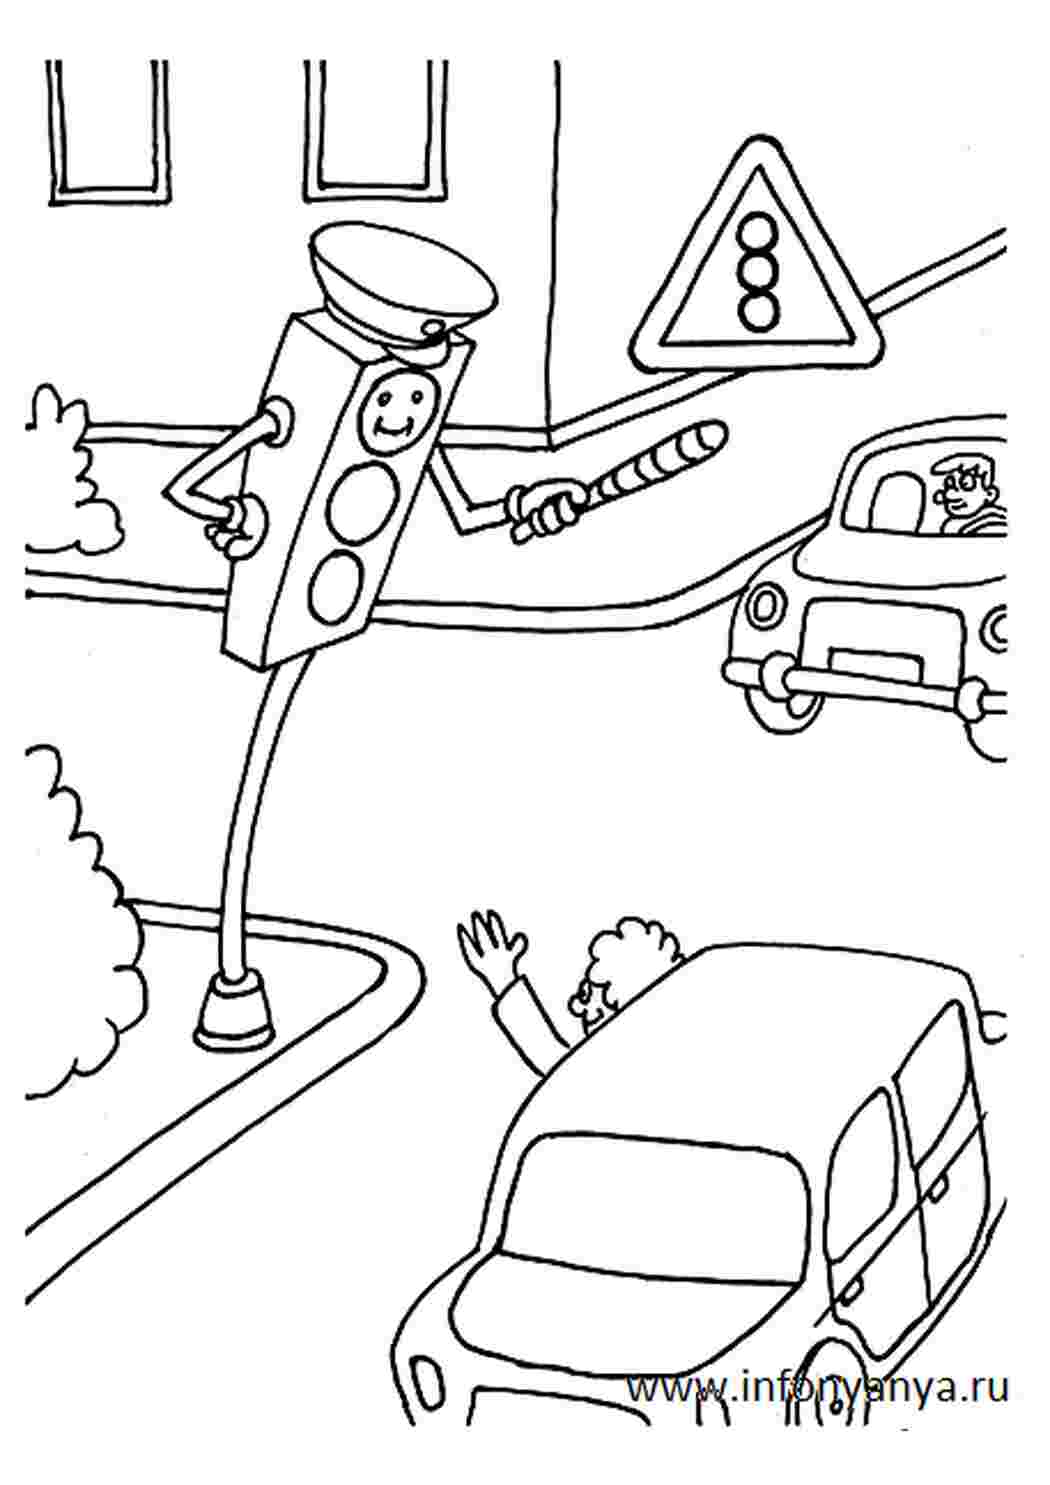 Раскраски Правила дорожного движения для детей (Раскраска ПДД)